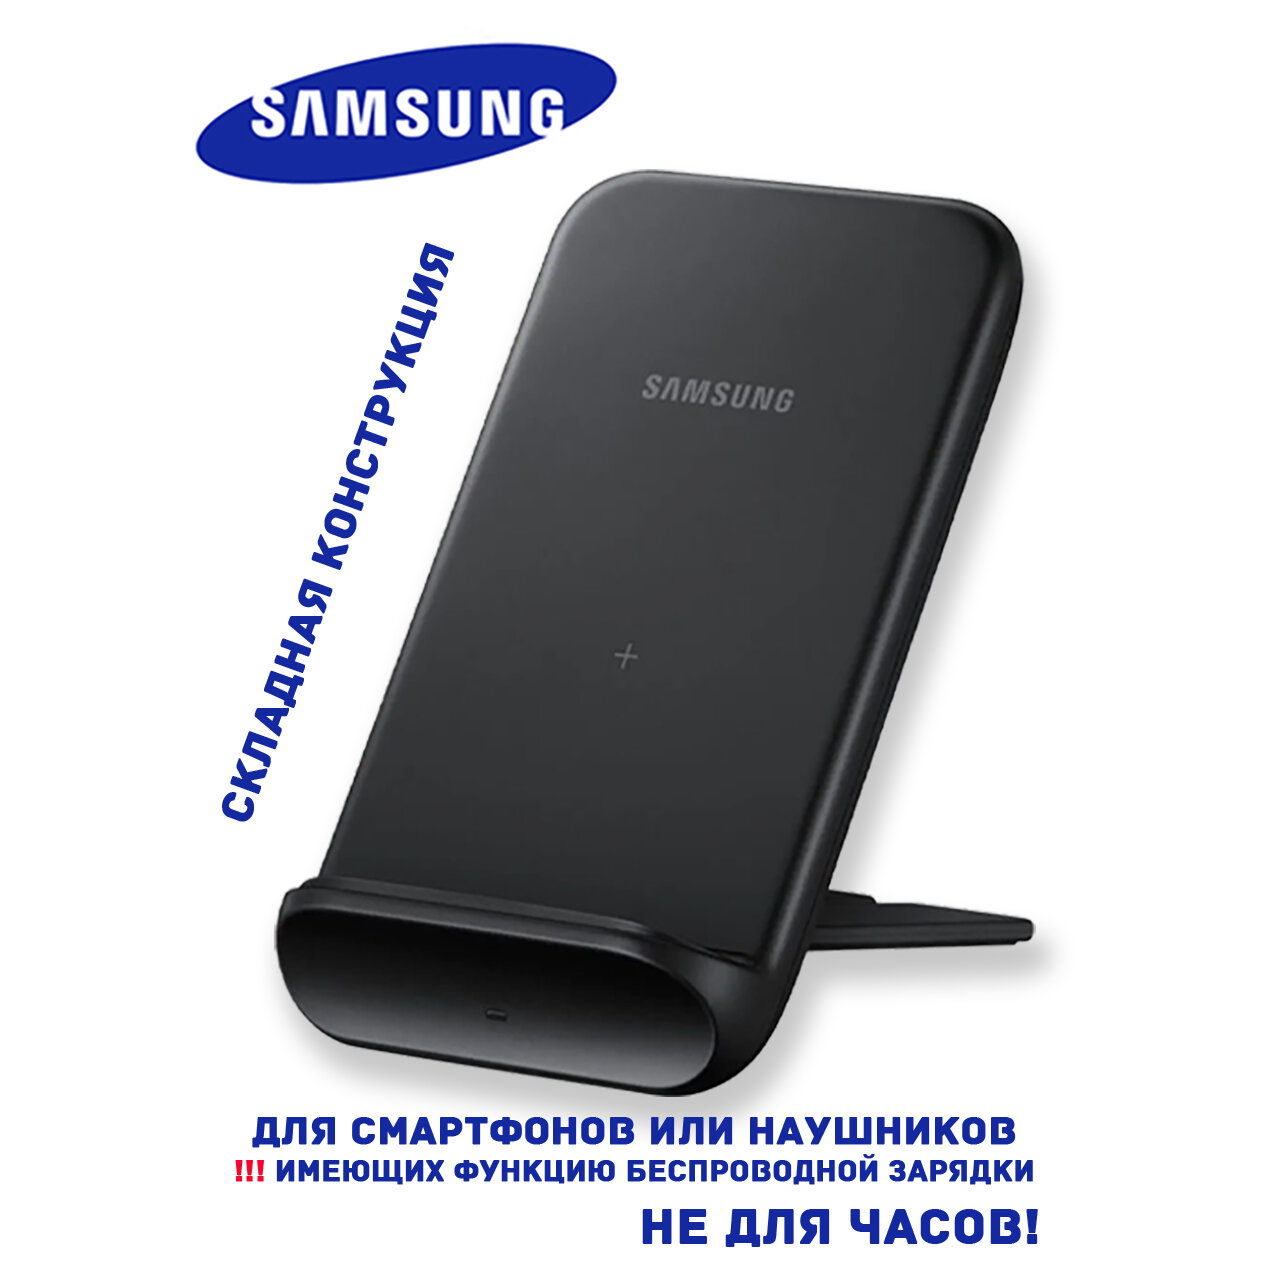 Беспроводная зарядка Samsung EP-N3300 (для смартфона или наушников) Черная